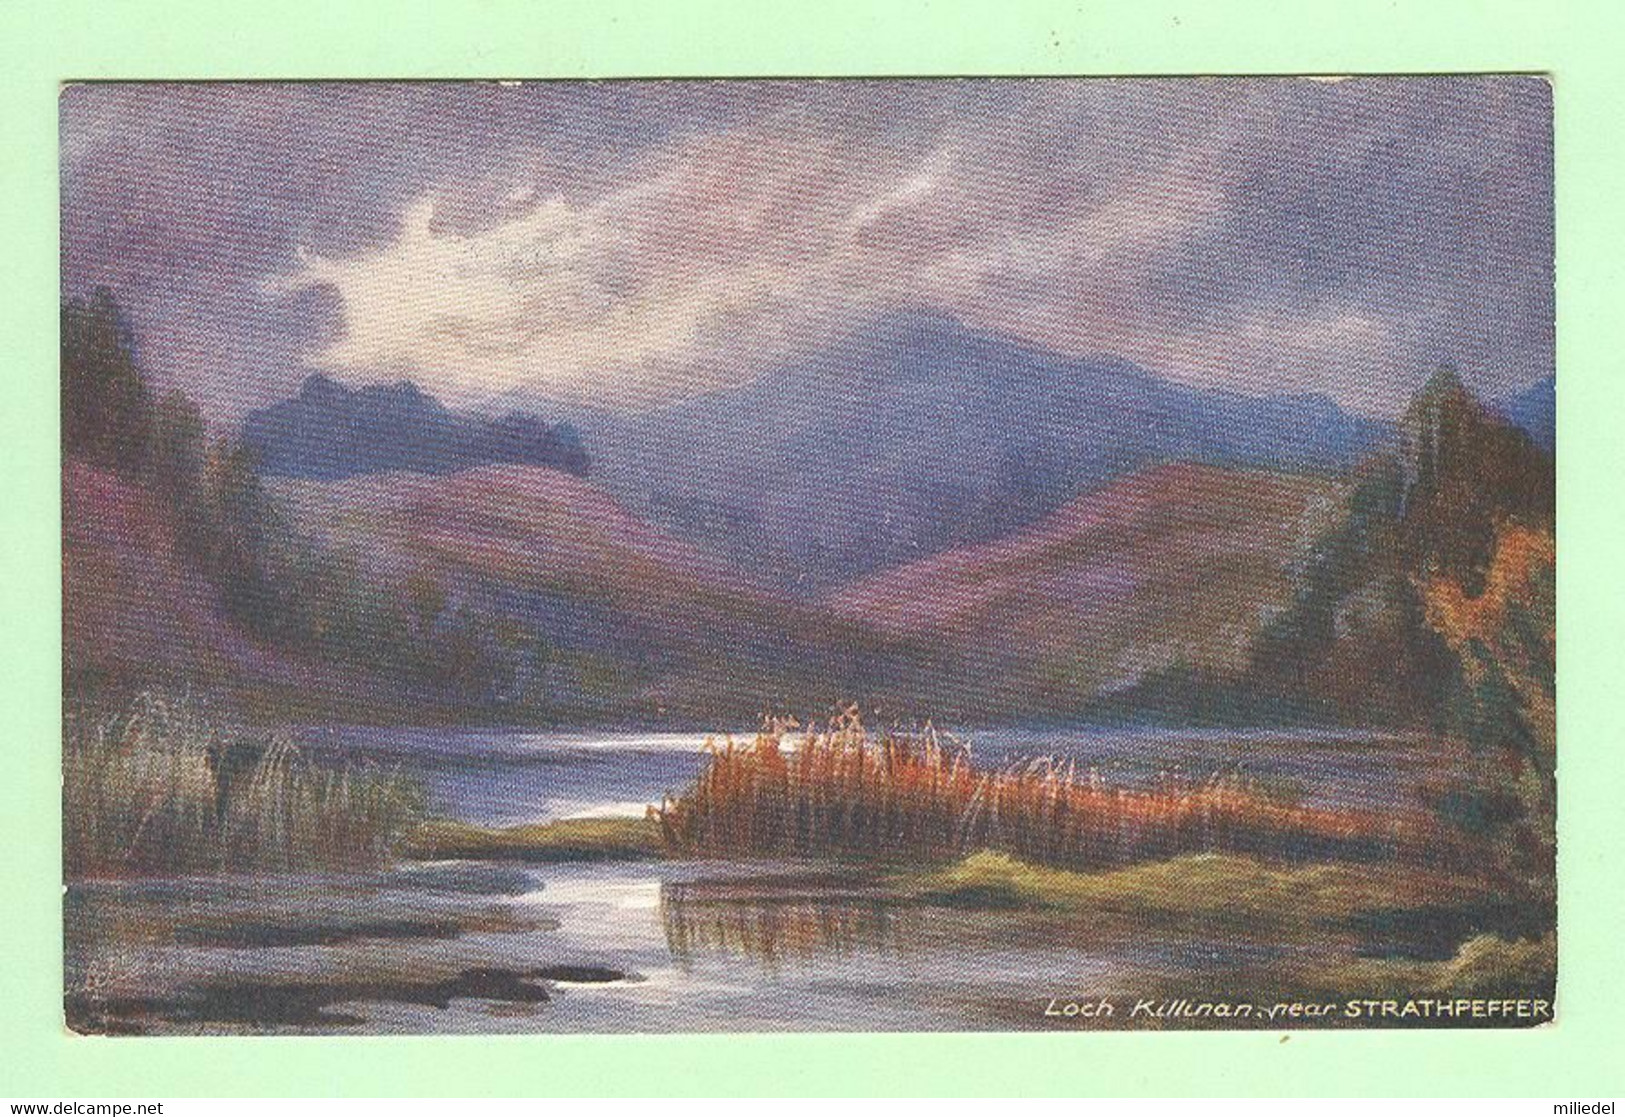 W1098 - ECOSSE - Loch Killinan, Near STRATHPEFFER - Carte Oilette - Bonnie Scotland - Ross & Cromarty